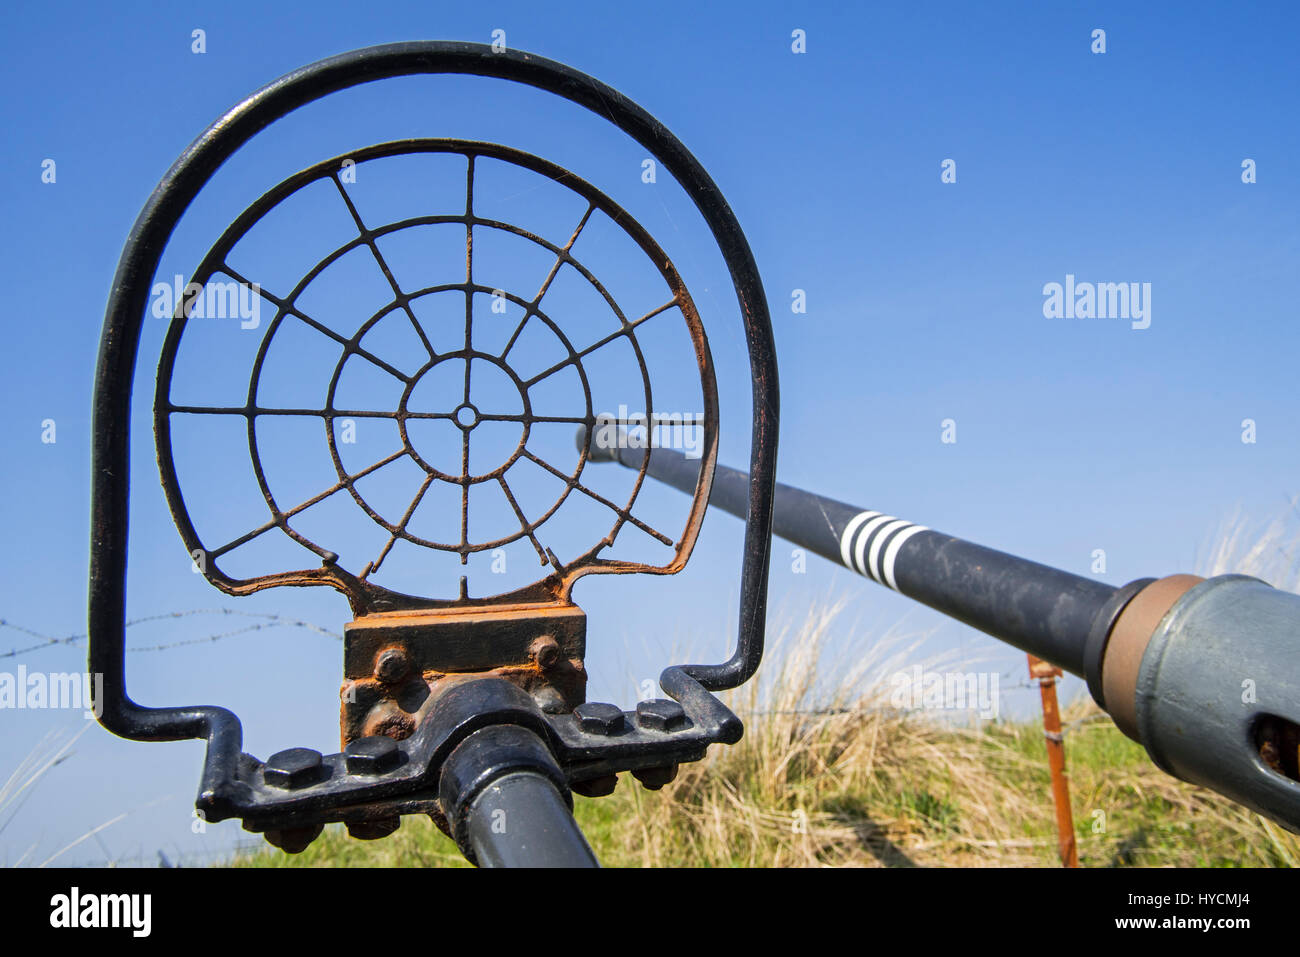 Le canon et la vue d'araignées de Flak 28 / 40 mm Bofors anti-aériens, auto-cannon à Raversyde / Atlantikwall Raversijde Mur de l'Atlantique, Belgique Banque D'Images